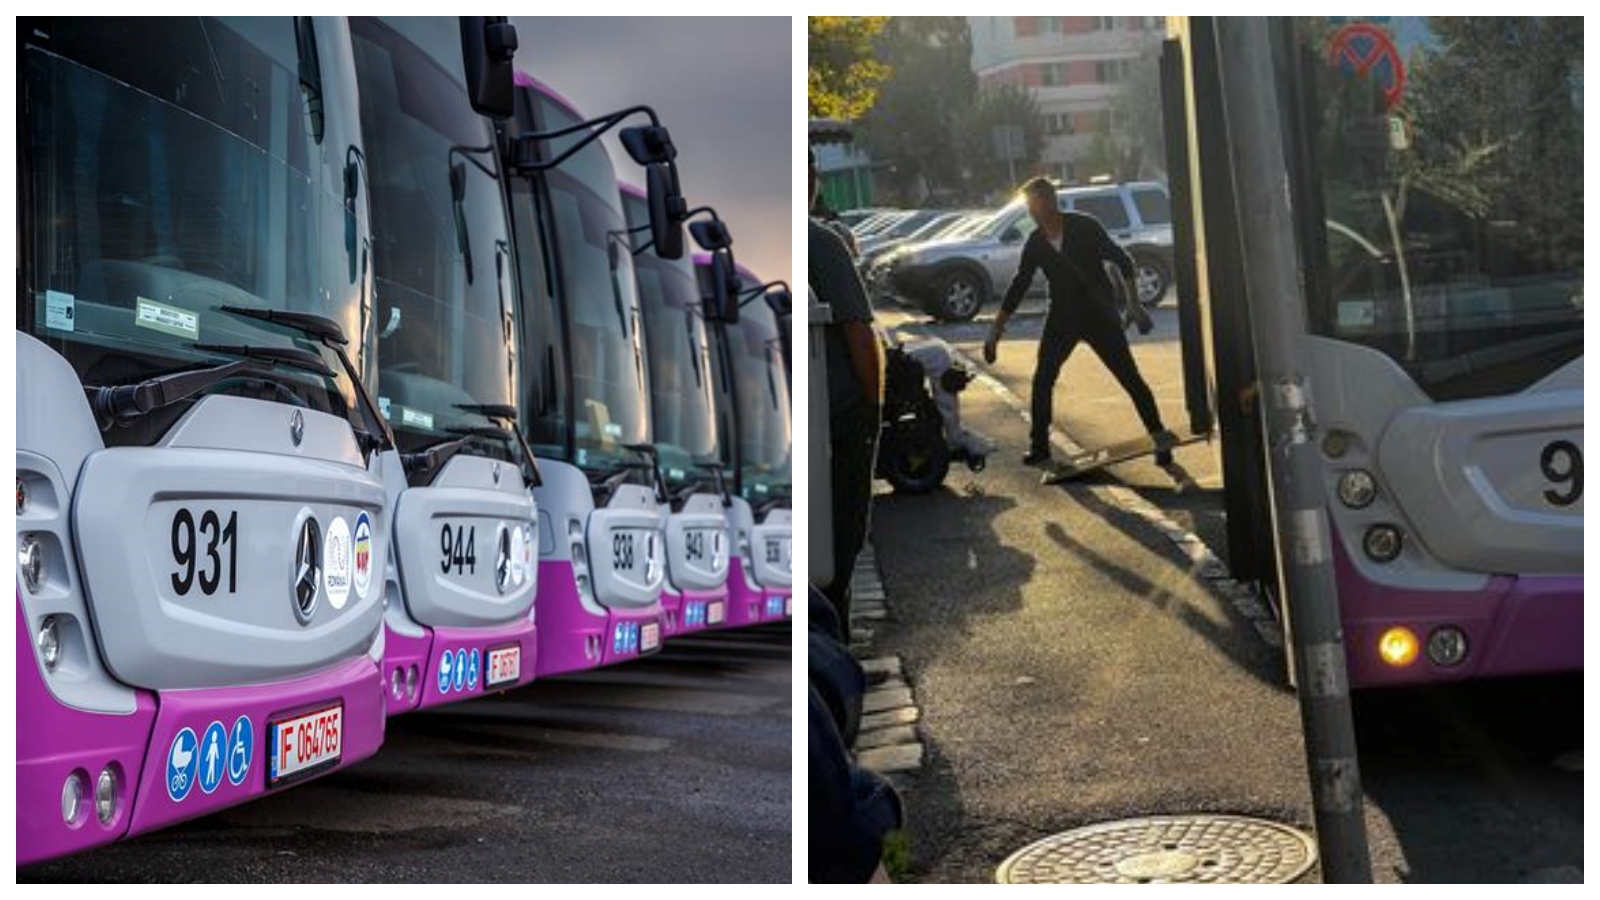 ”Respect pentru oameni ca el!” - Clujul e altfel, iar șoferul autobuzului a sărit să ajute - FOTO